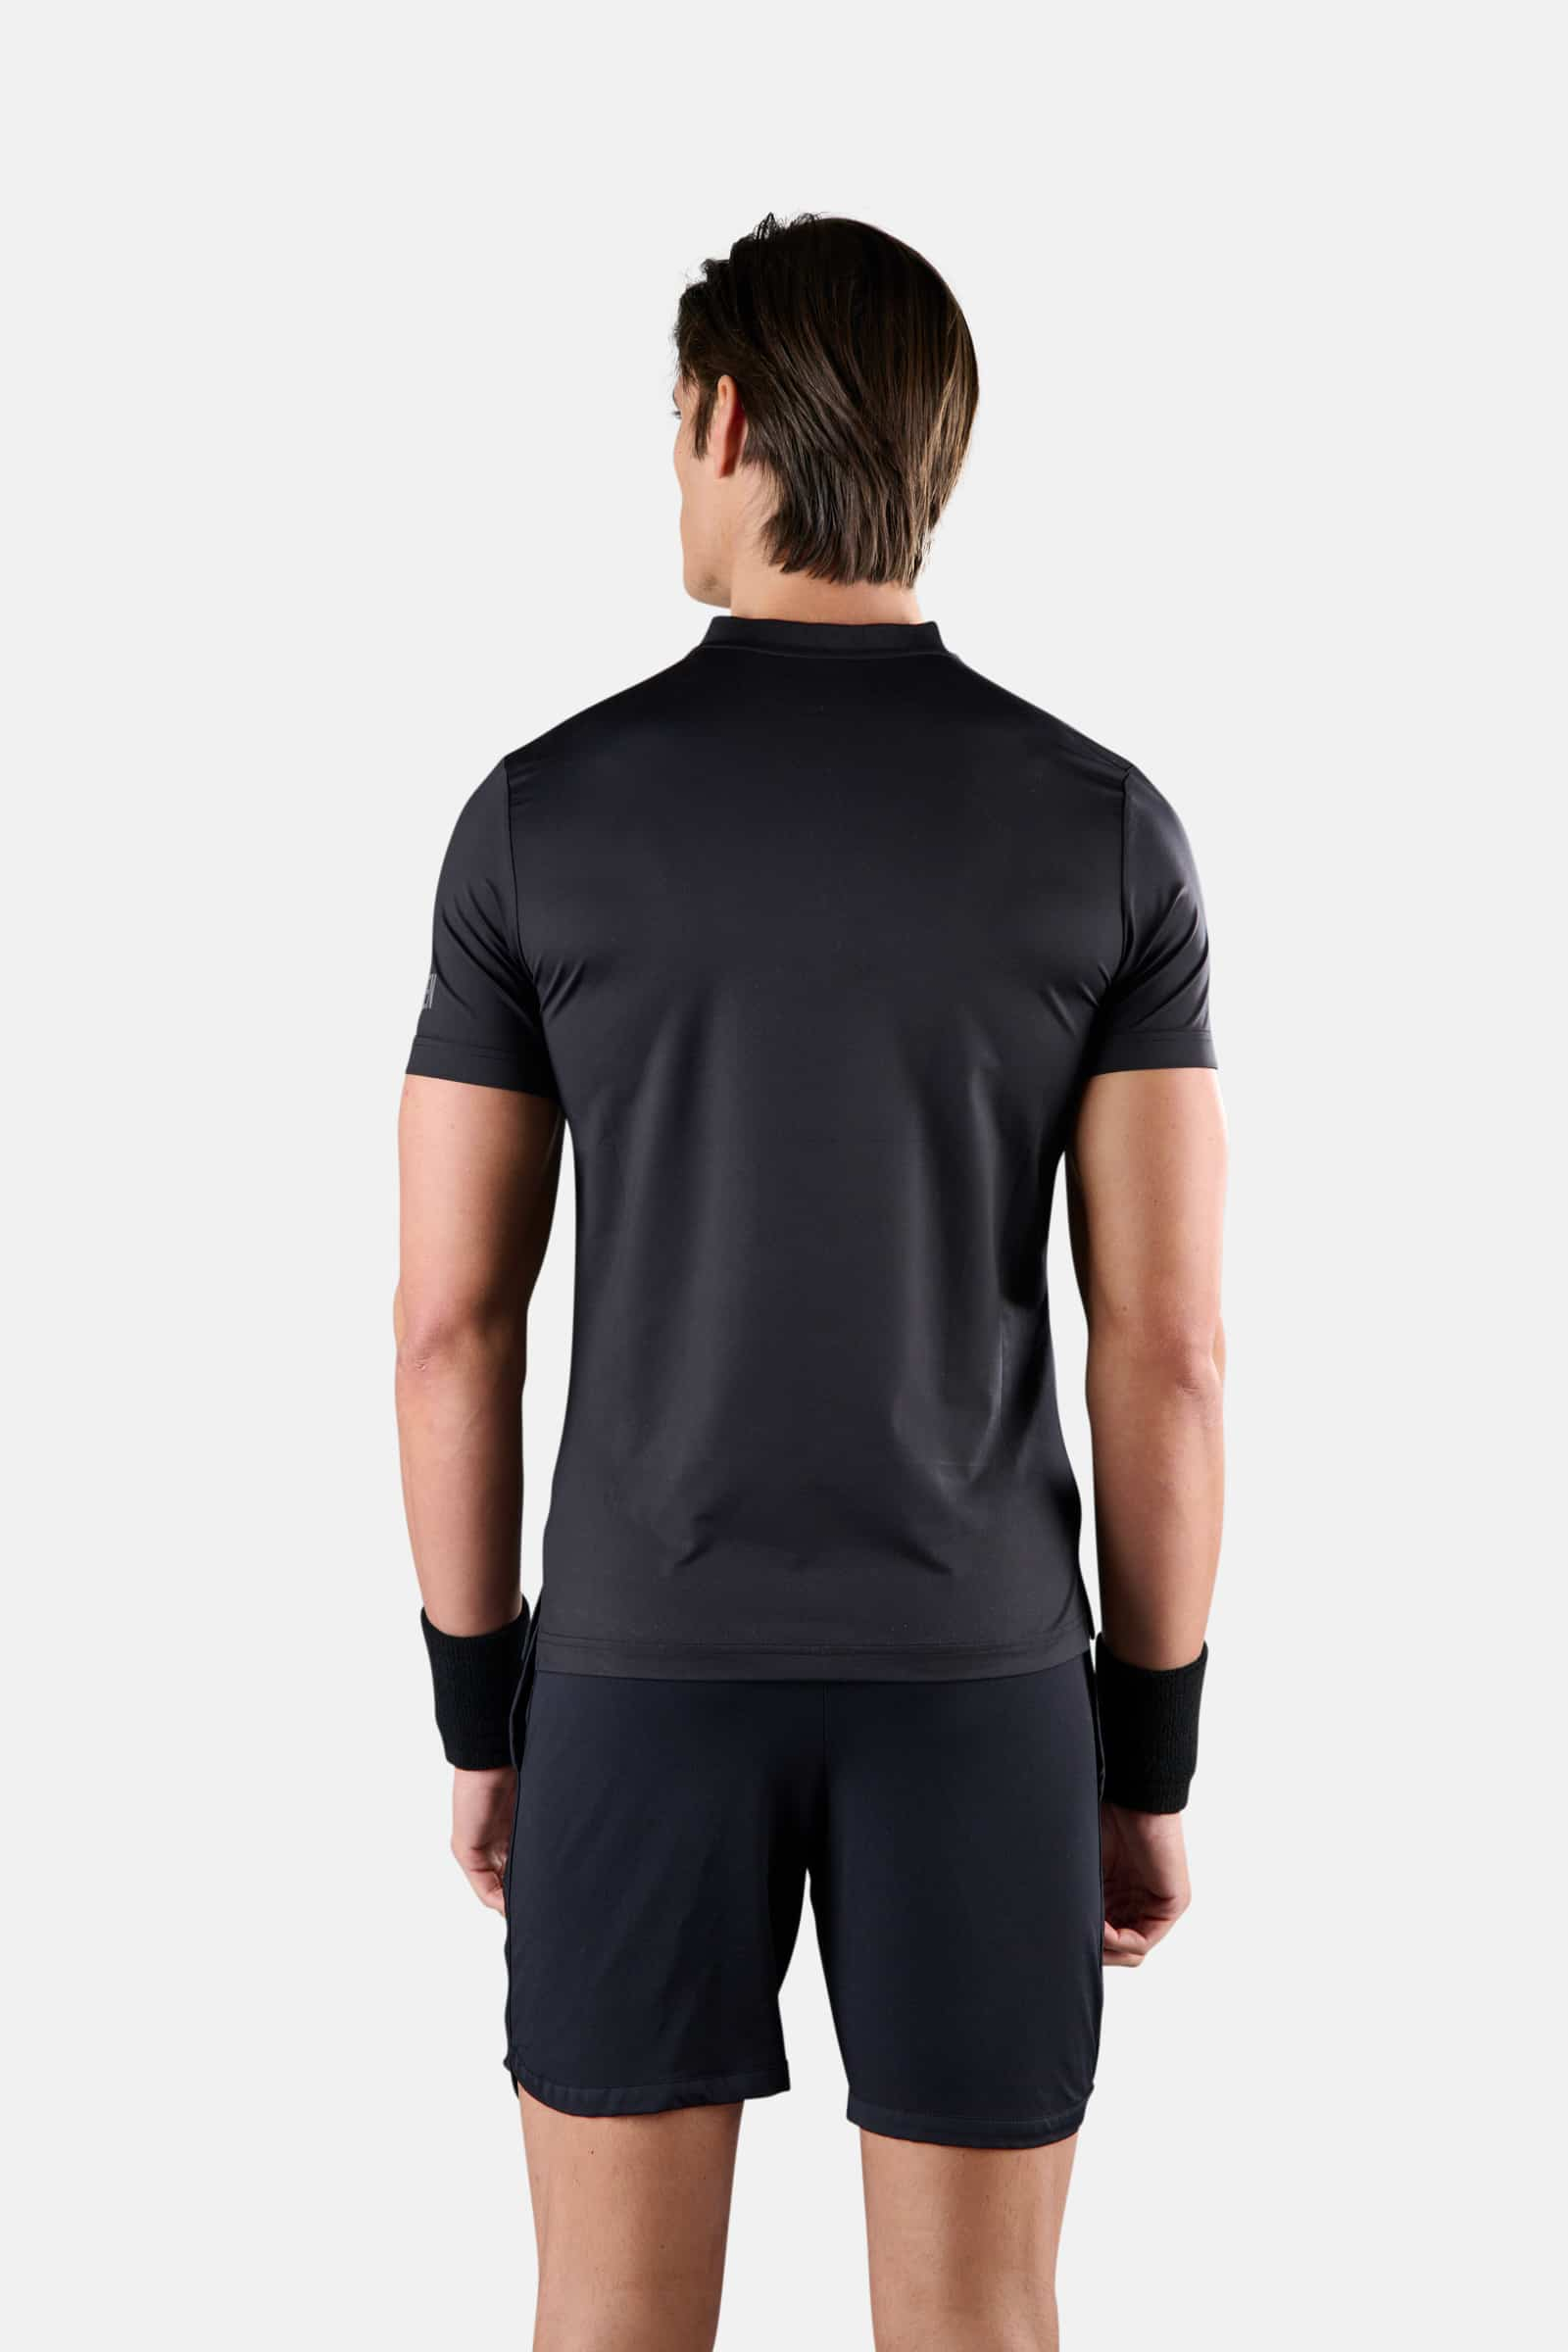 TECH SERAFINO - BLACK - Hydrogen - Luxury Sportwear